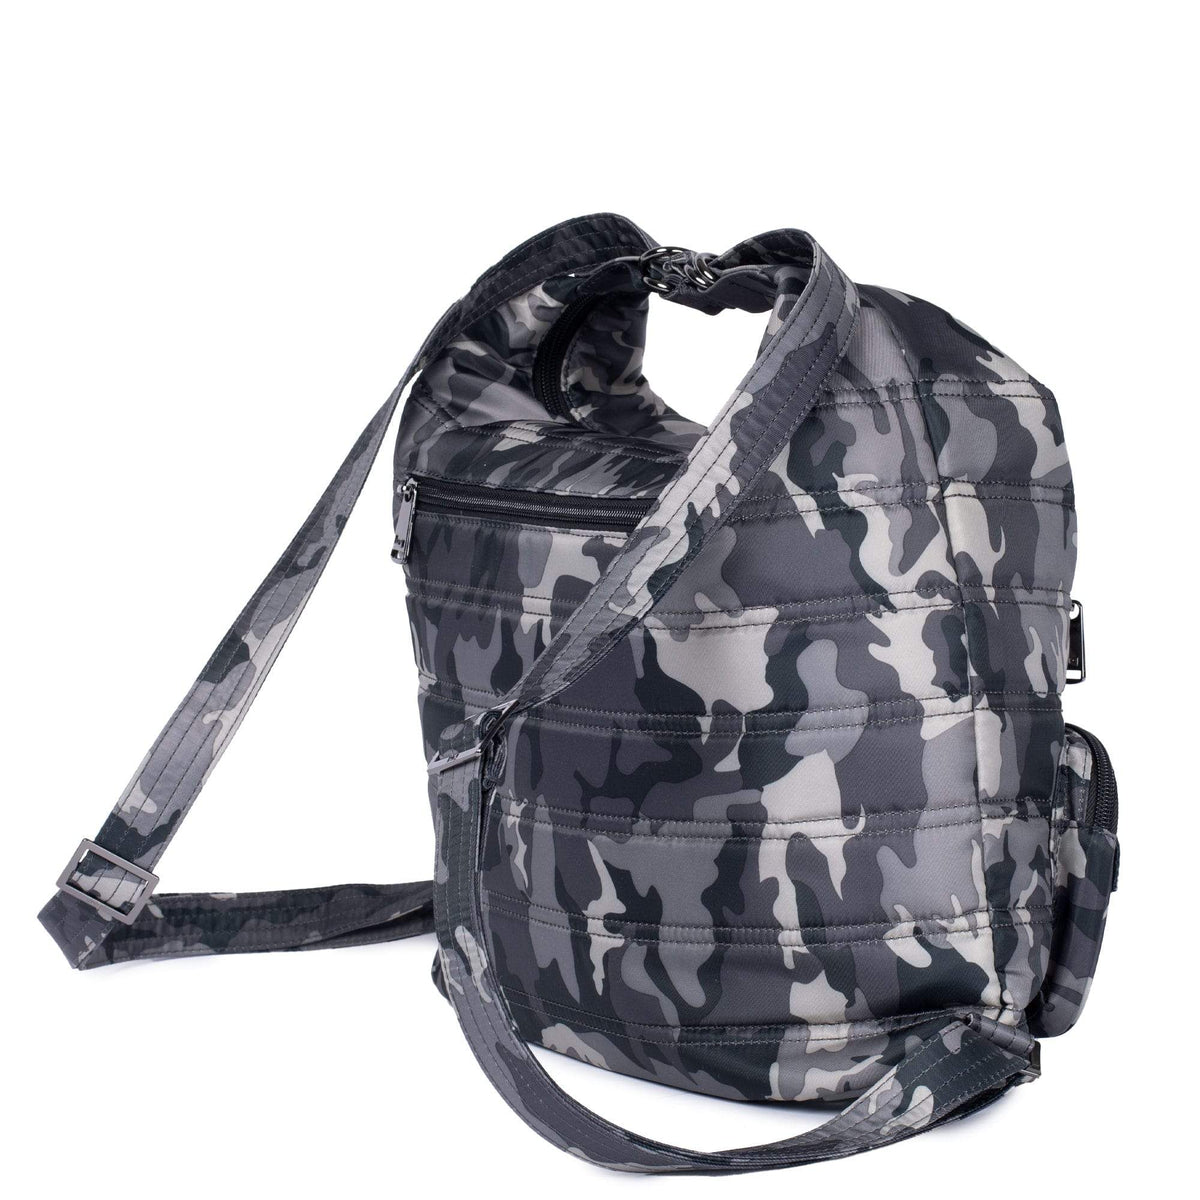 Zipliner Convertible Hobo Bag